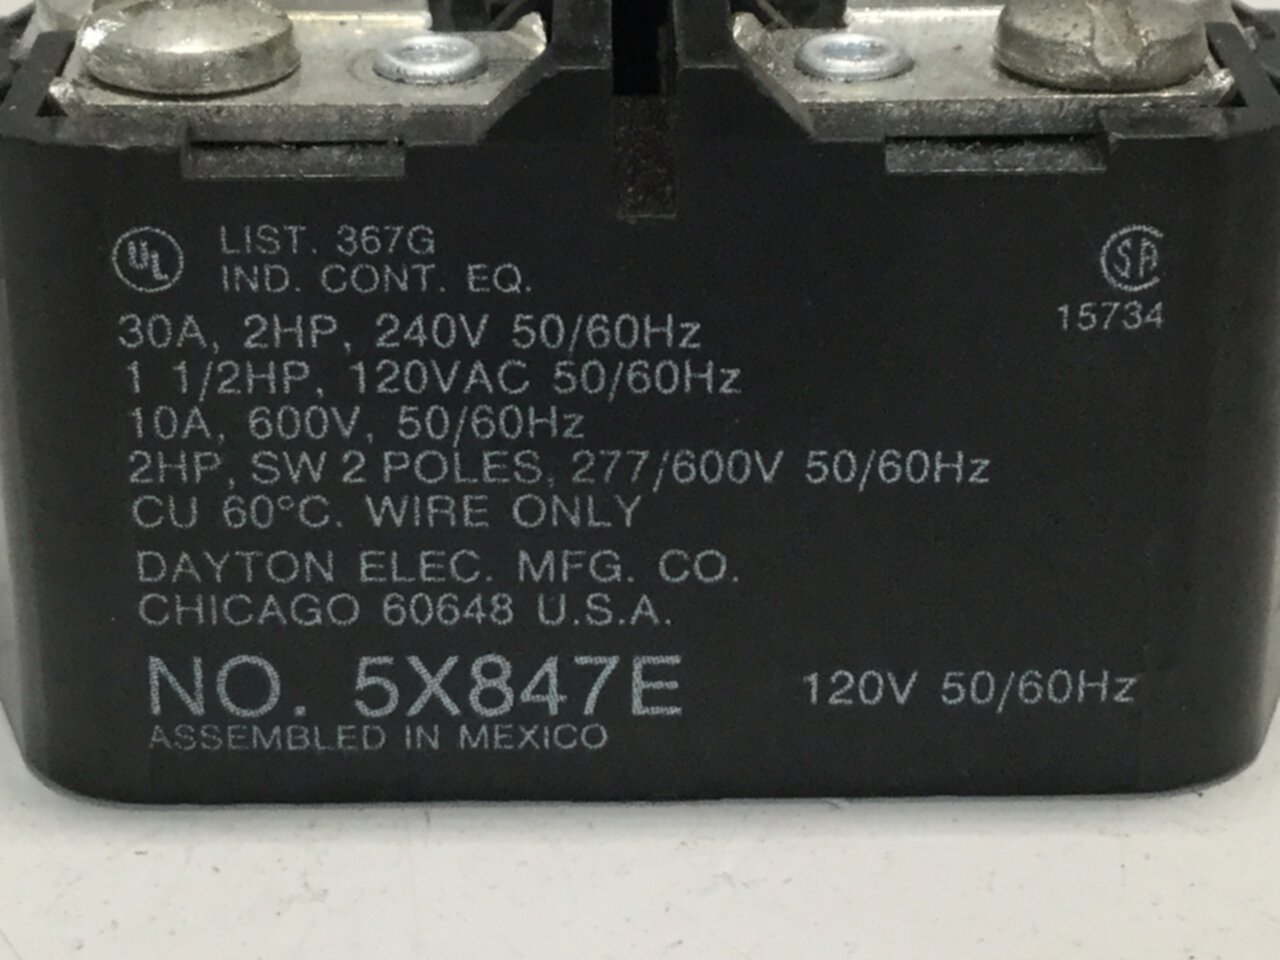 NEW DAYTON POWER RELAY 5X847E 